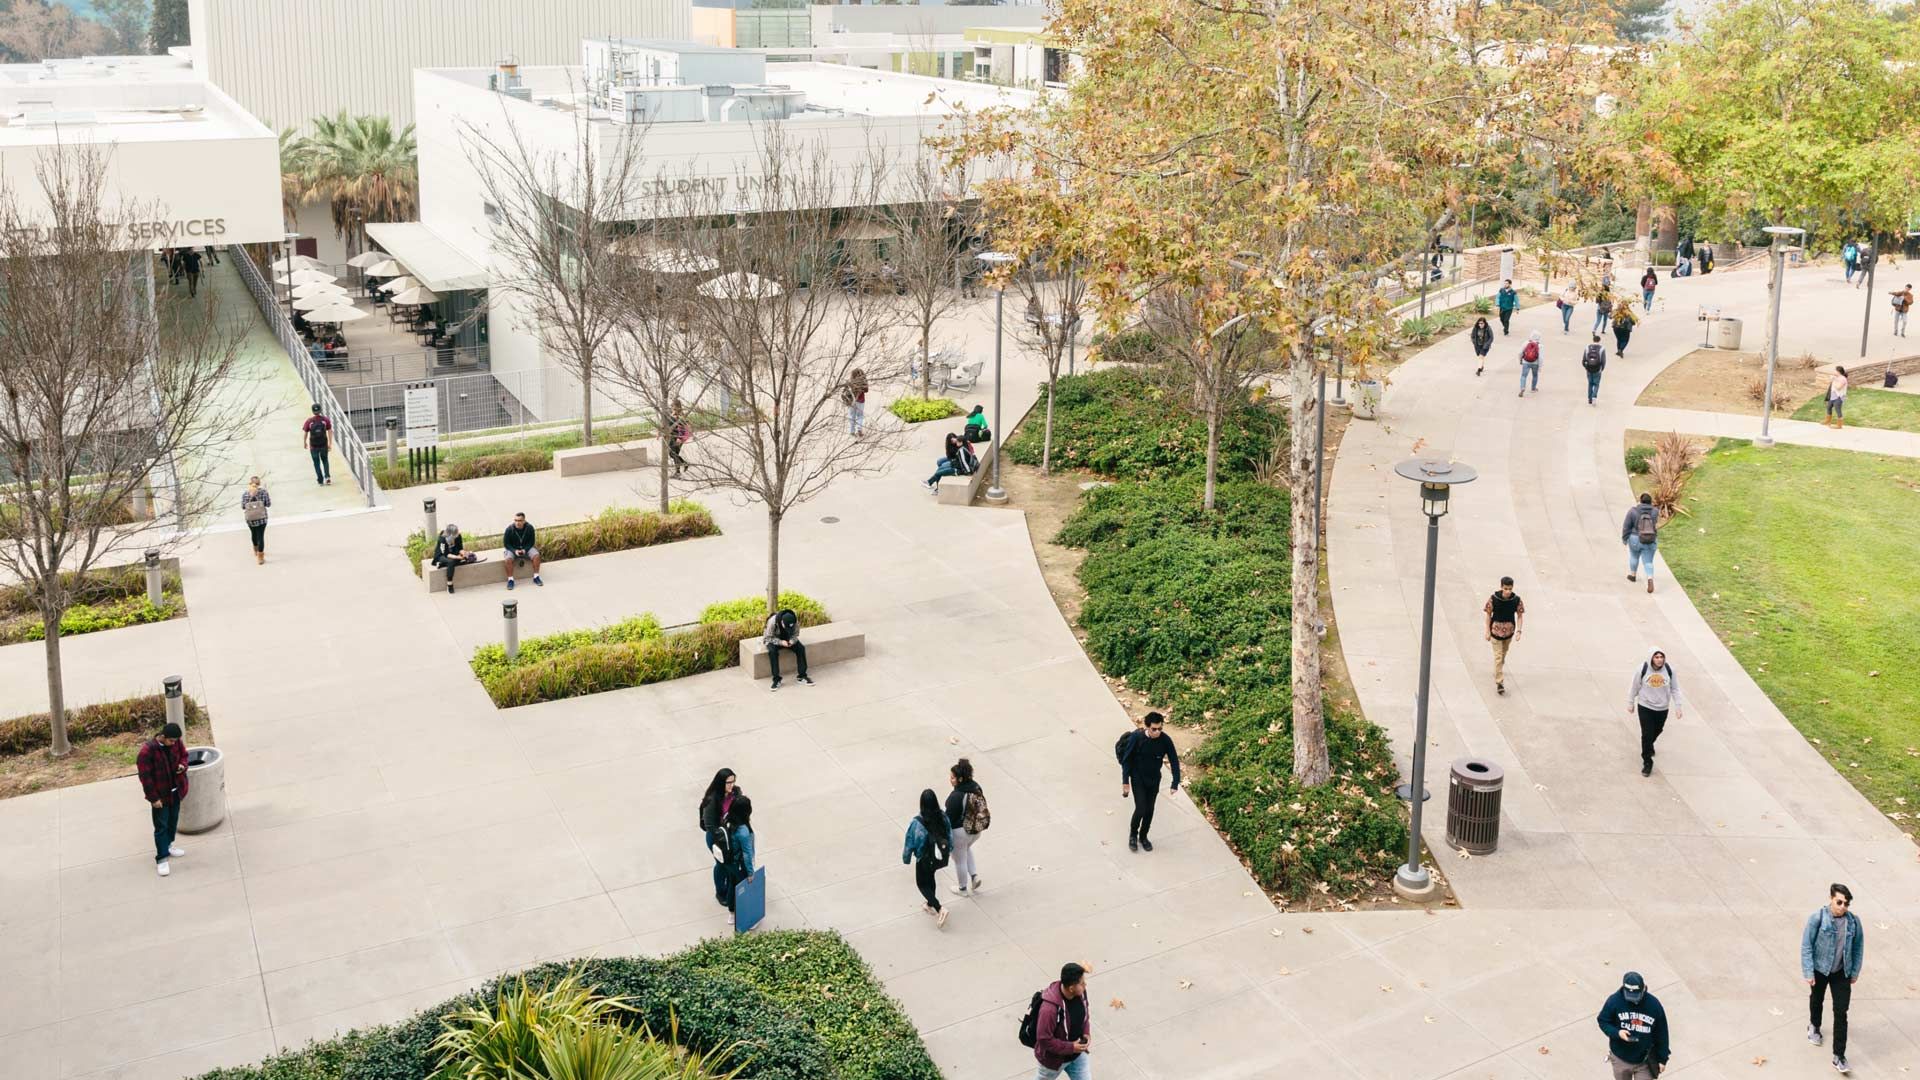 Ein Universitätscampus mit Grünflächen und Gehwegen, die von Studierenden mit Rucksäcken bevölkert werden